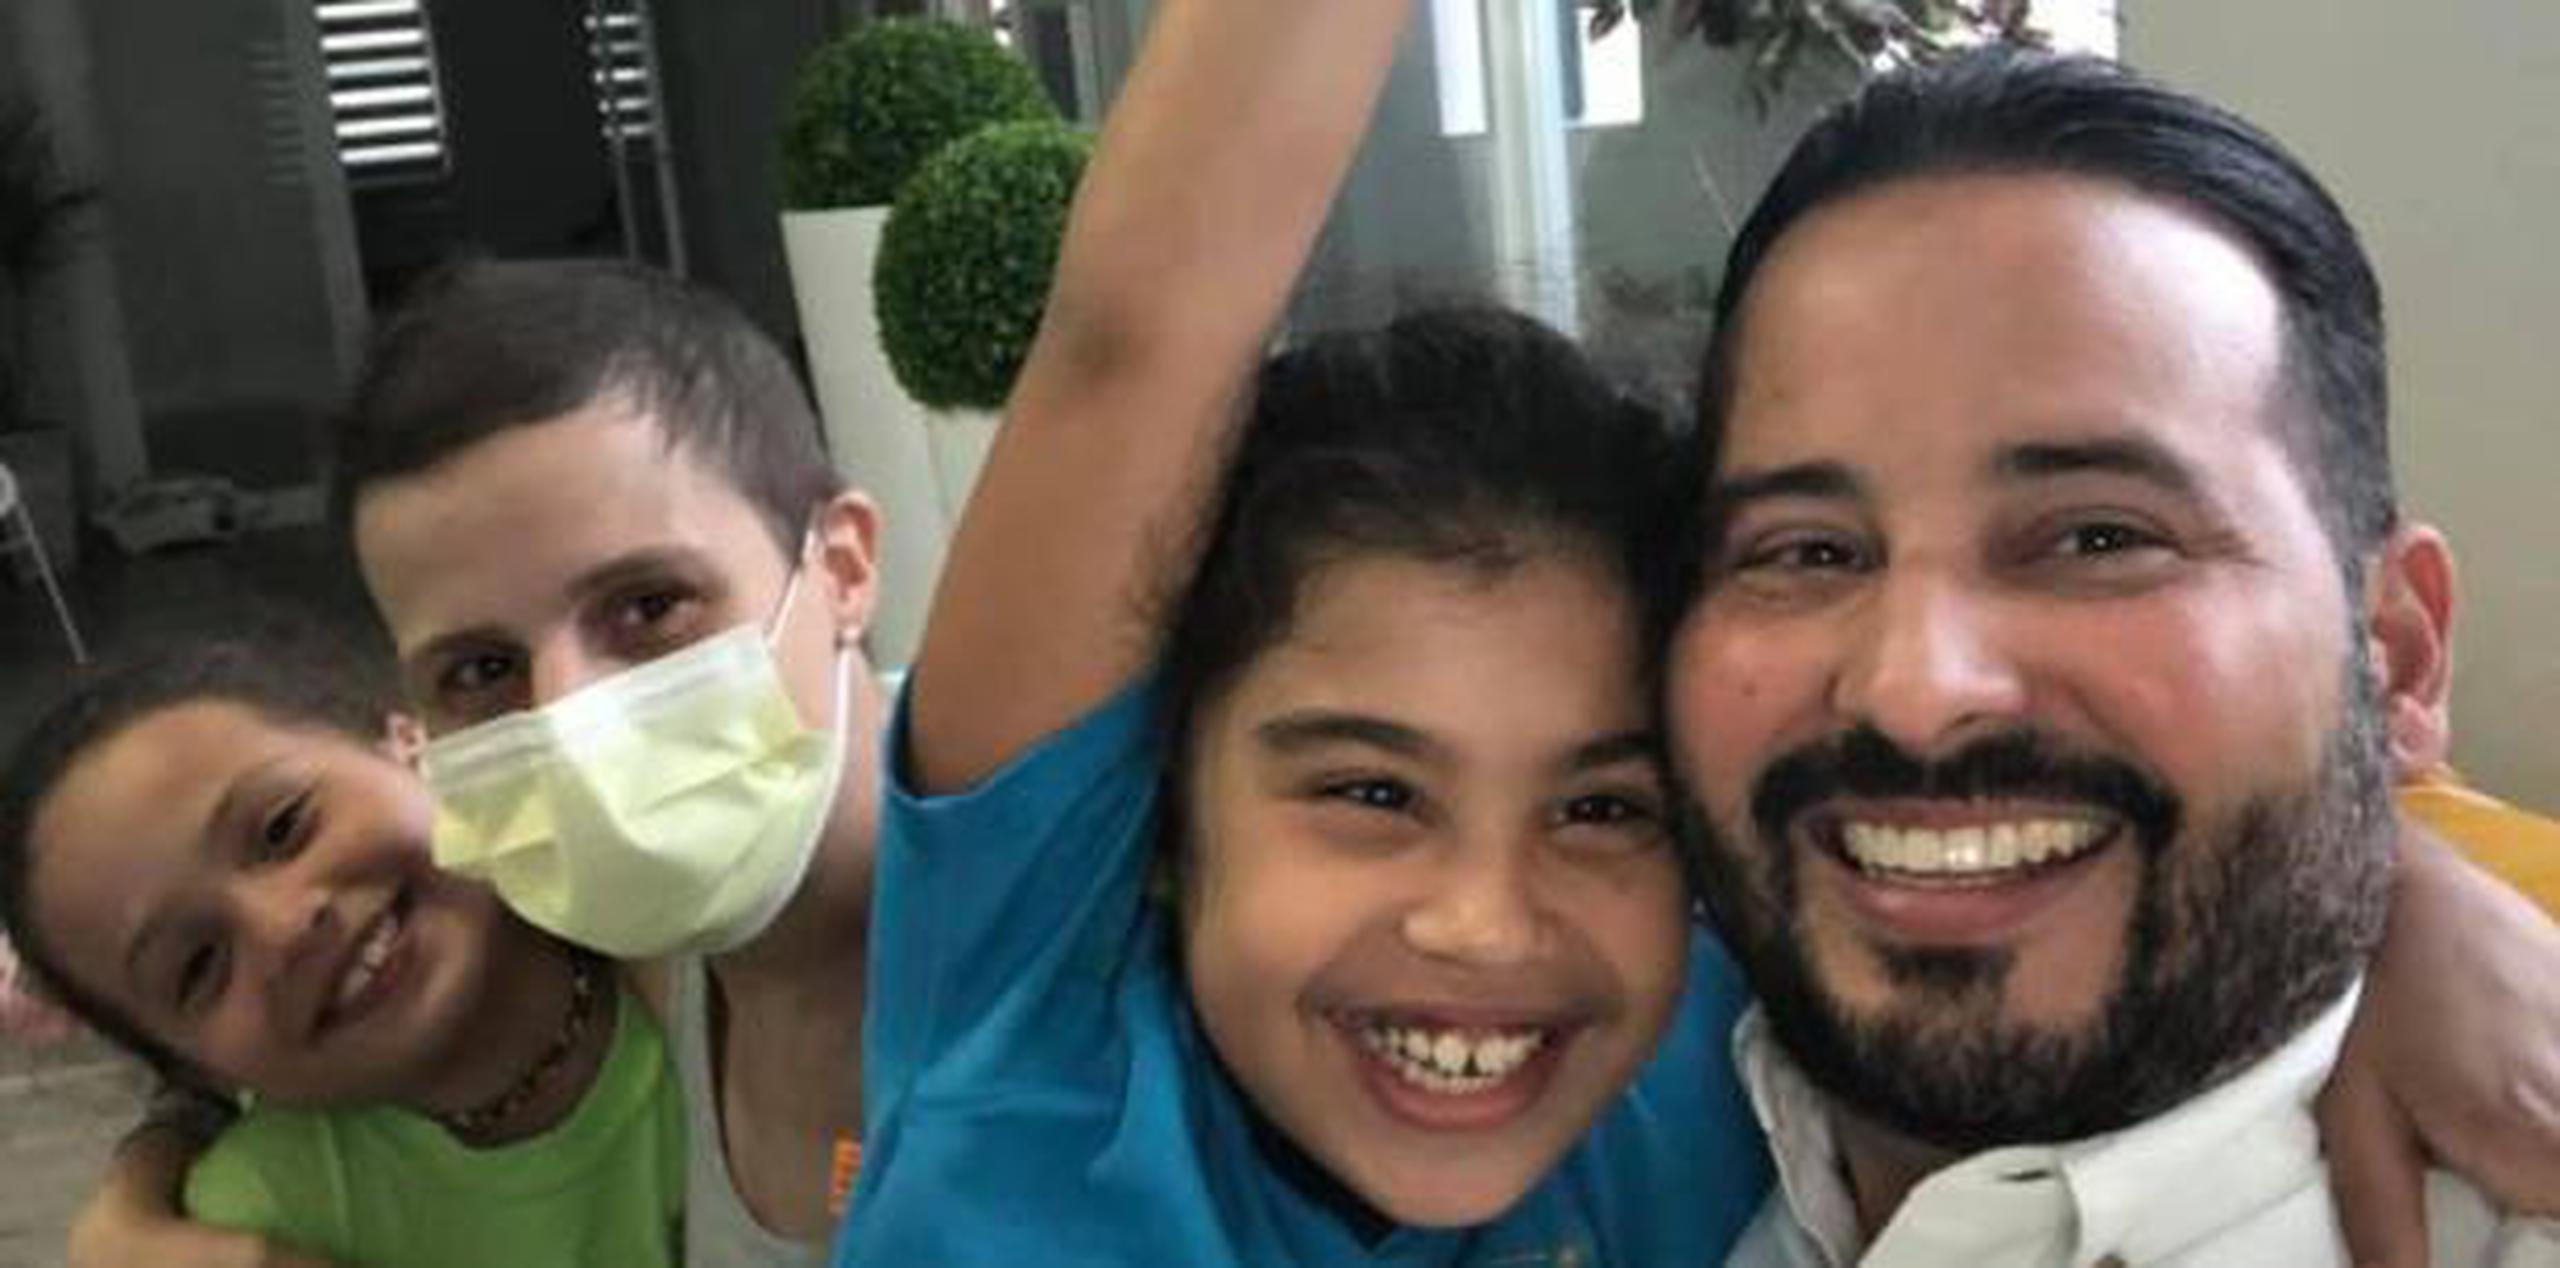 Glendaliz Soto Vega, esposa de Luis Javier Hernández Ortiz, alcalde de Villalba, fue recibida en su casa con sonrisas por sus hijas Victoria e Isabel. (facebook)